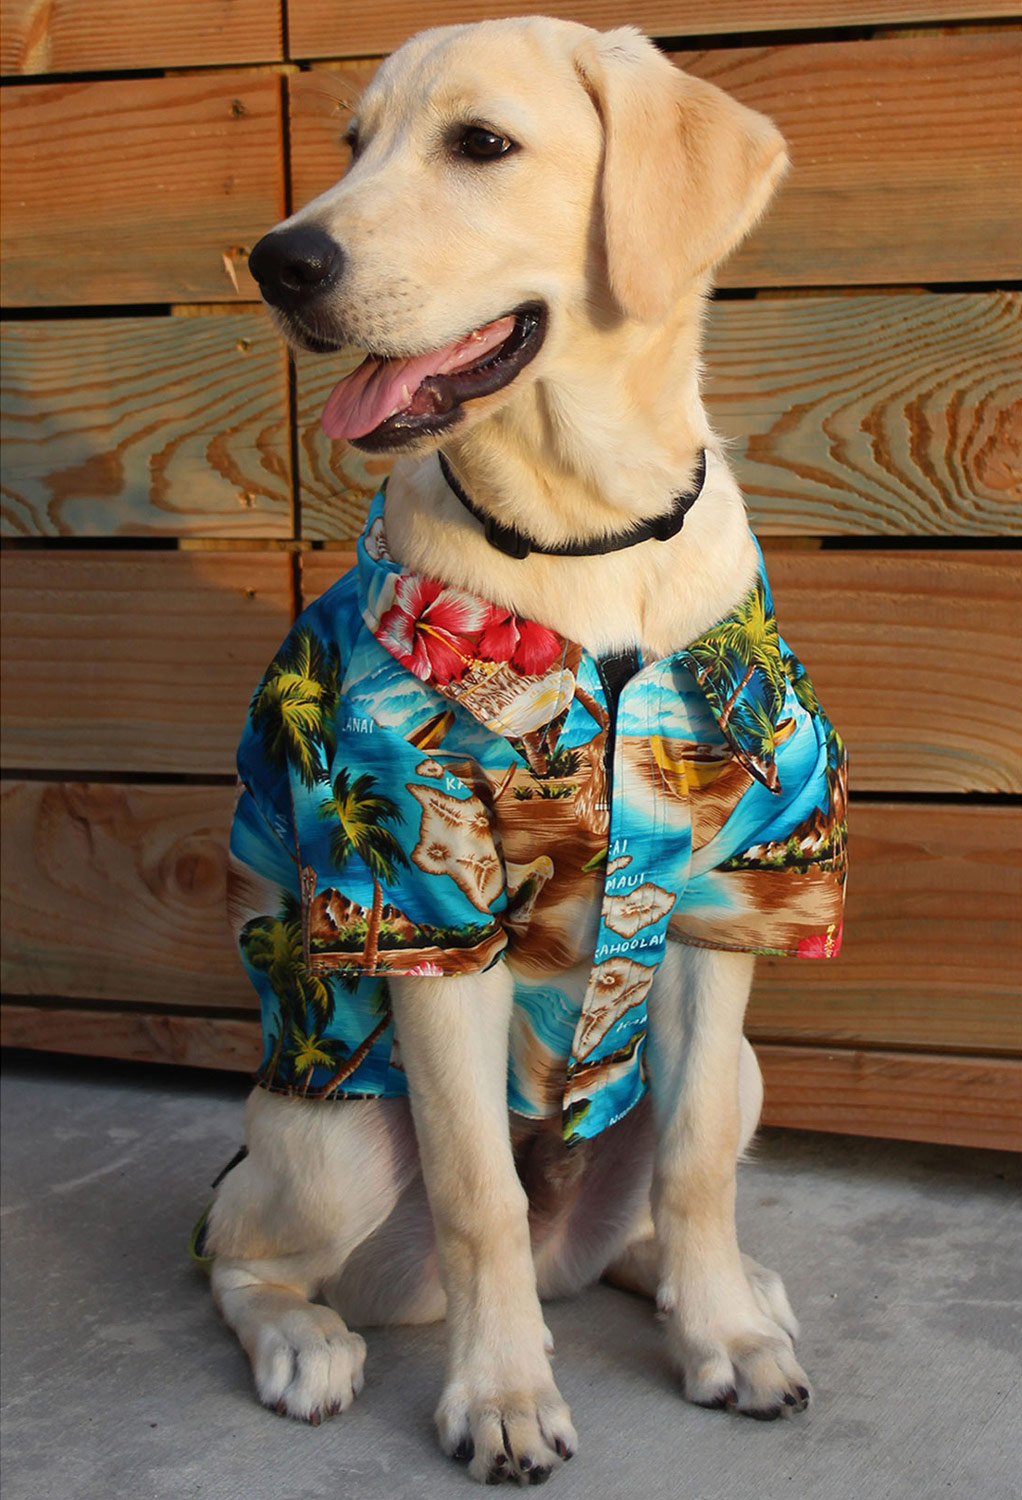 Pet Dog Cat Hawaiian Shirt Lei Hula Luau Fancy Dress Costume Outfit Clothes S-XL